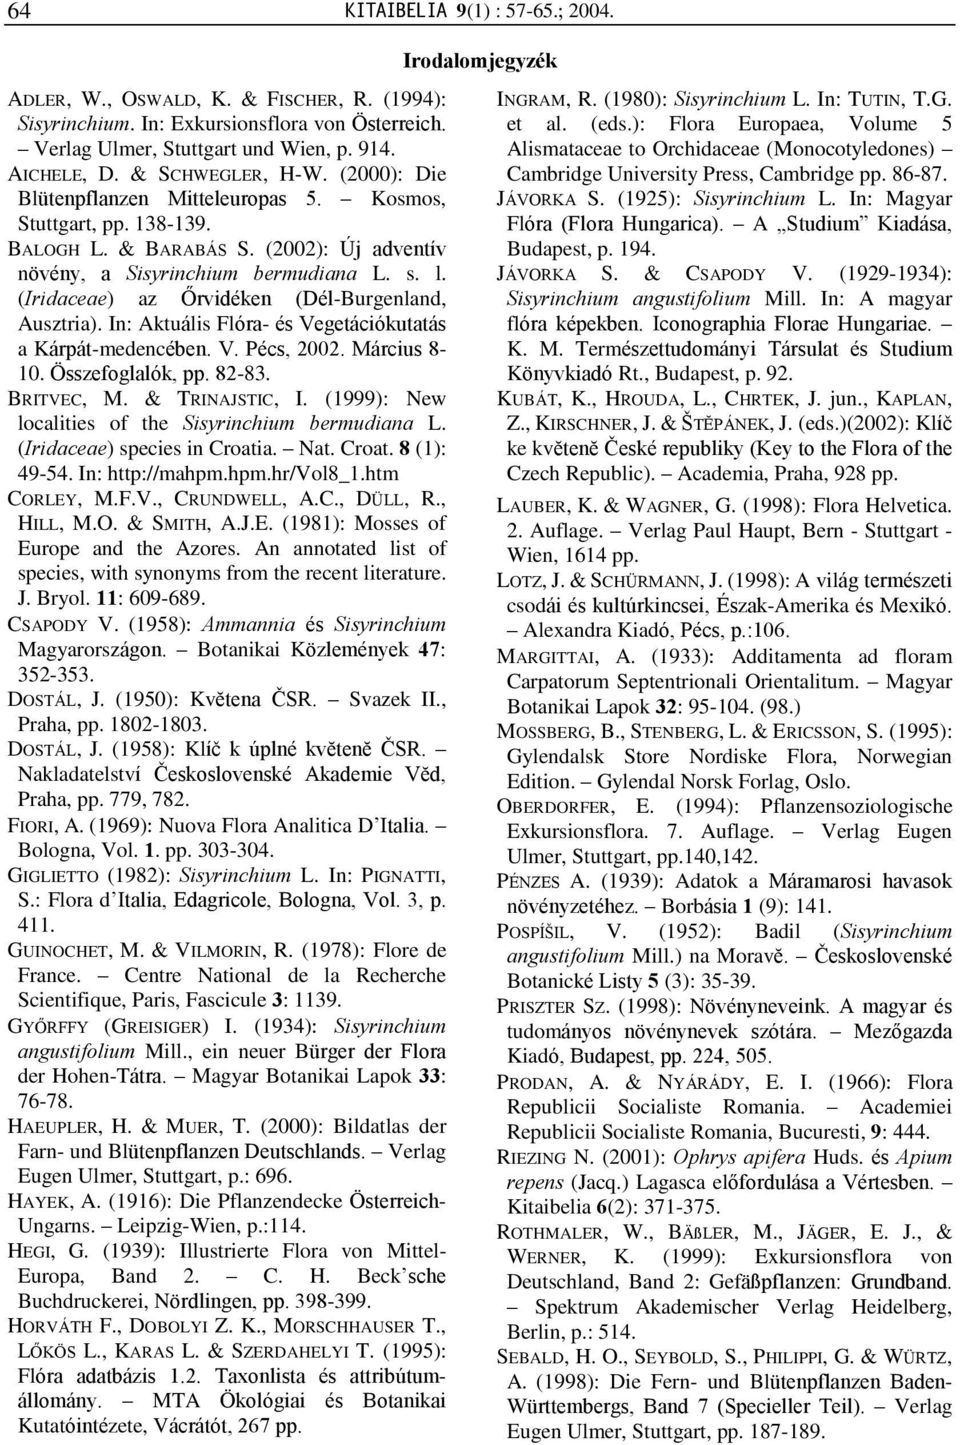 (Iridaceae) az Õrvidéken (Dél-Burgenland, Ausztria). In: Aktuális Flóra- és Vegetációkutatás a Kárpát-medencében. V. Pécs, 2002. Március 8-10. Összefoglalók, pp. 82-83. BRITVEC, M. & TRINAJSTIC, I.